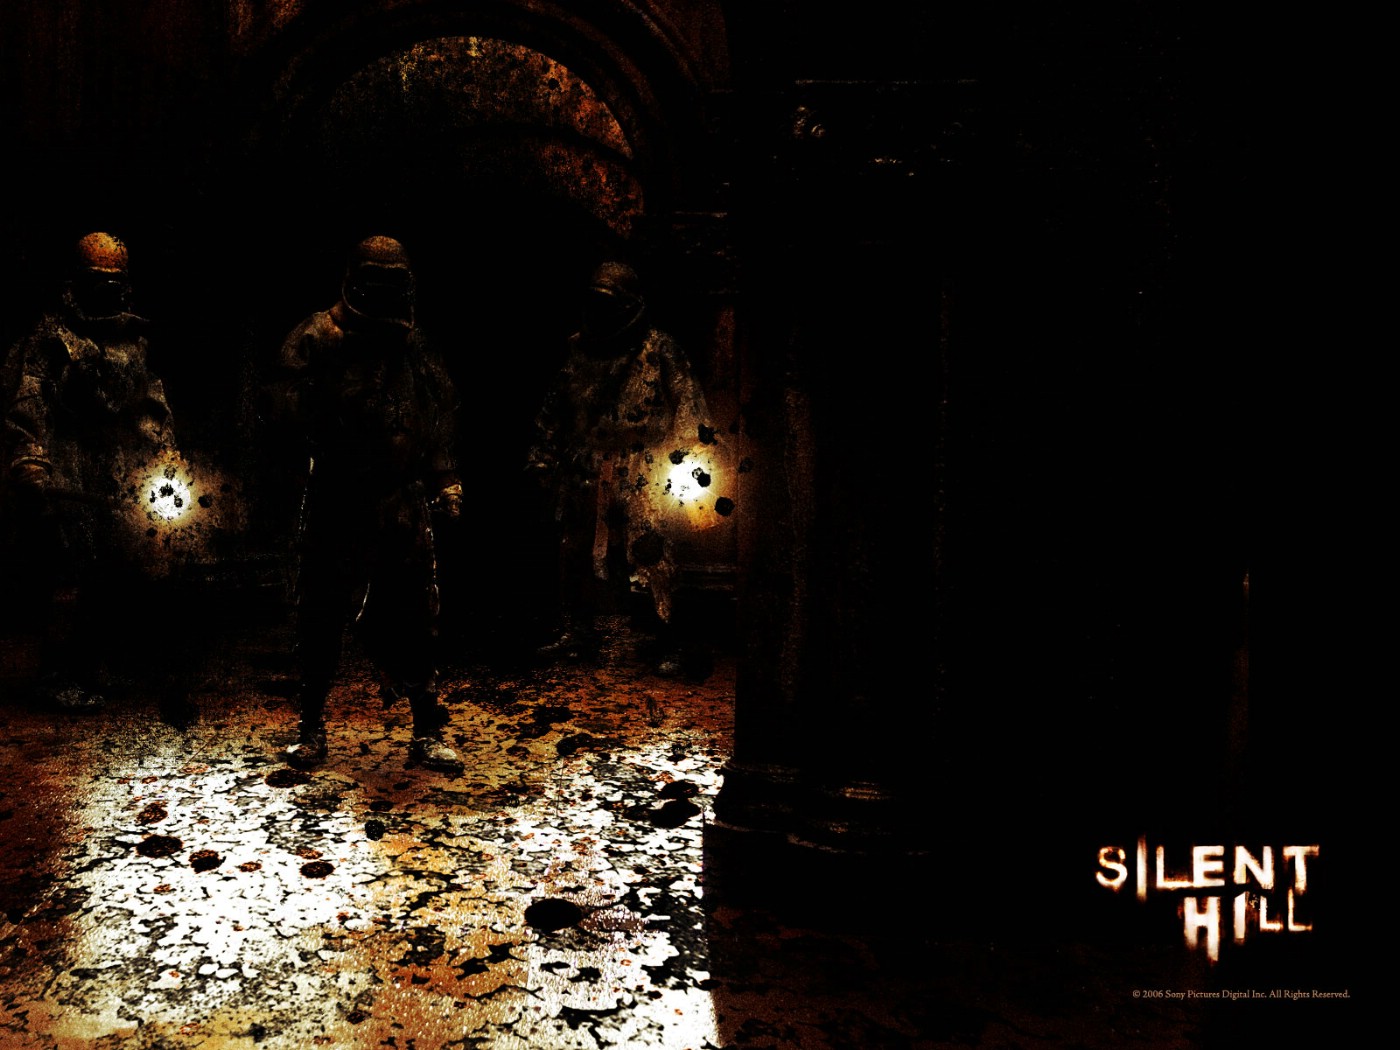 壁纸1400x1050 Movie wallpaper Silent Hill 2006 寂静岭 电影壁纸壁纸 恐怖电影《寂静岭 Silent Hill》壁纸 恐怖电影《寂静岭 Silent Hill》图片 恐怖电影《寂静岭 Silent Hill》素材 影视壁纸 影视图库 影视图片素材桌面壁纸